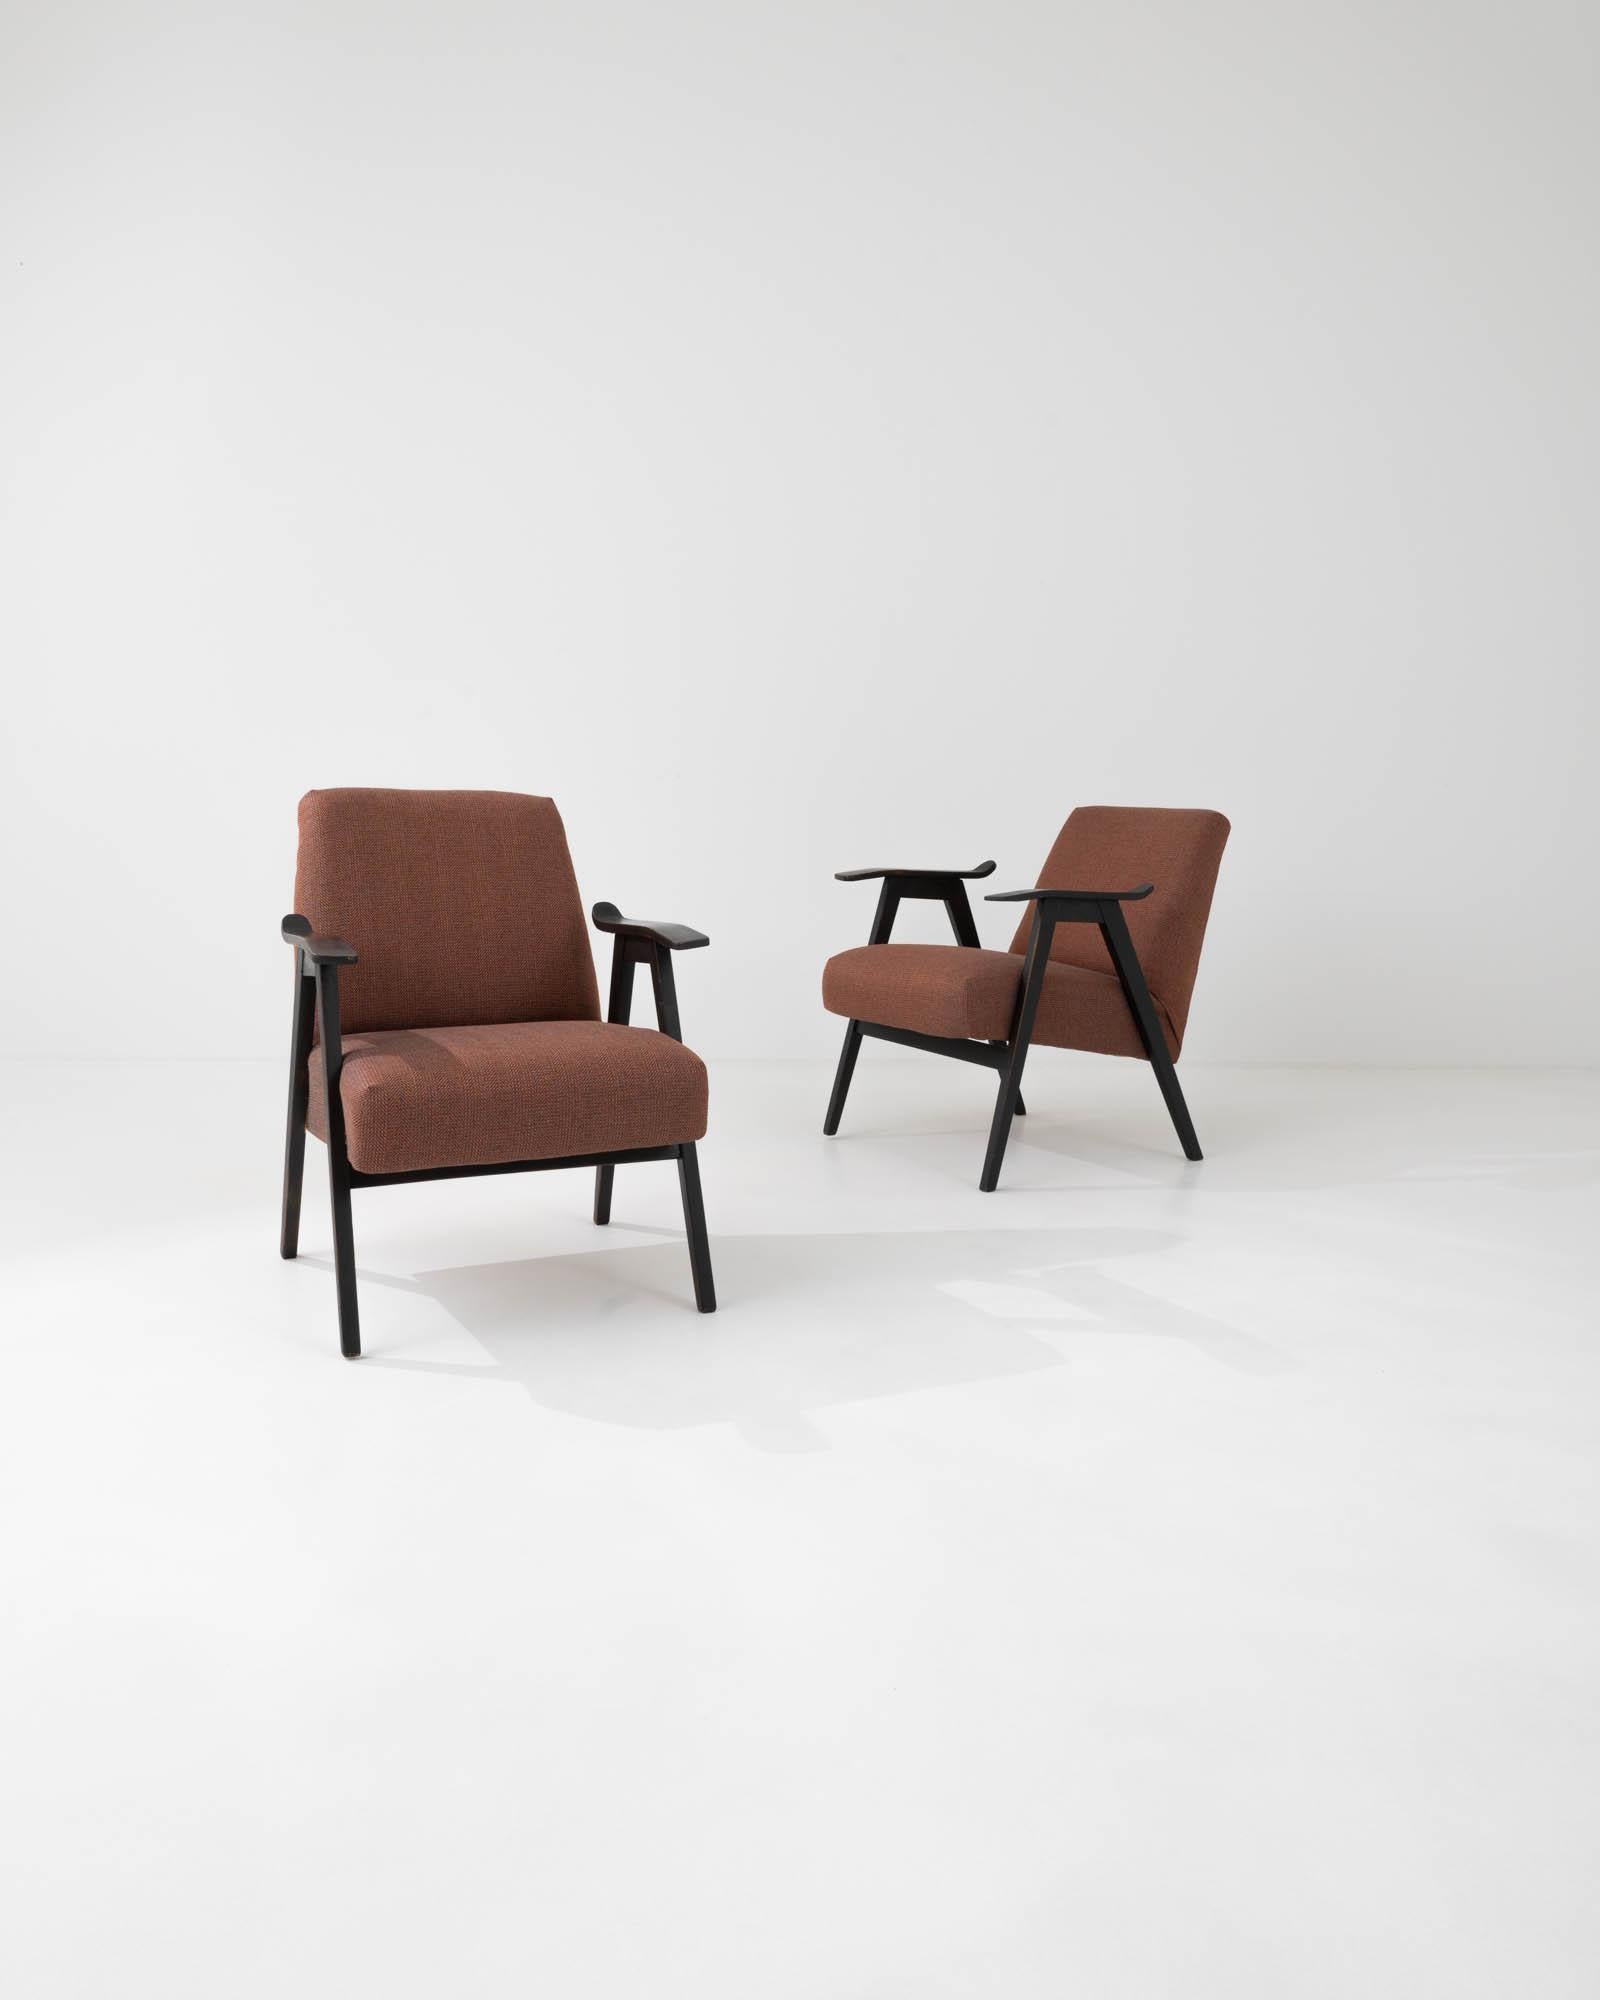 Caractérisés par les lignes épurées qui définissent leur silhouette minimaliste, ces fauteuils ont été fabriqués par l'emblématique entreprise de mobilier tchèque dans les années 1960. La courbe subtile et l'inclinaison douce des accoudoirs en bois